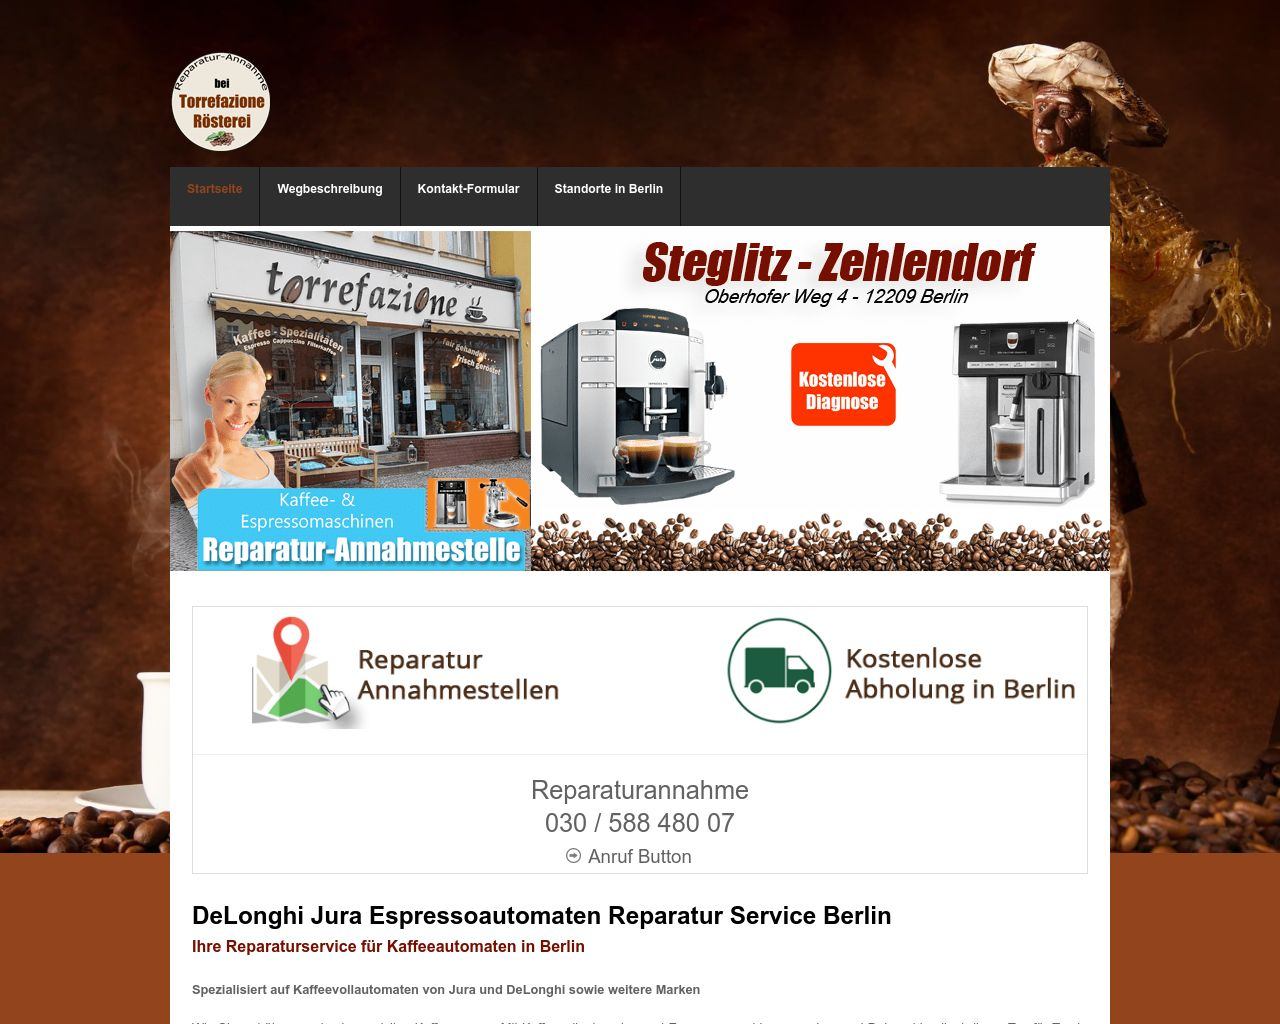 Bild Website kaffeeautomaten-service-berlin.de in 1280x1024